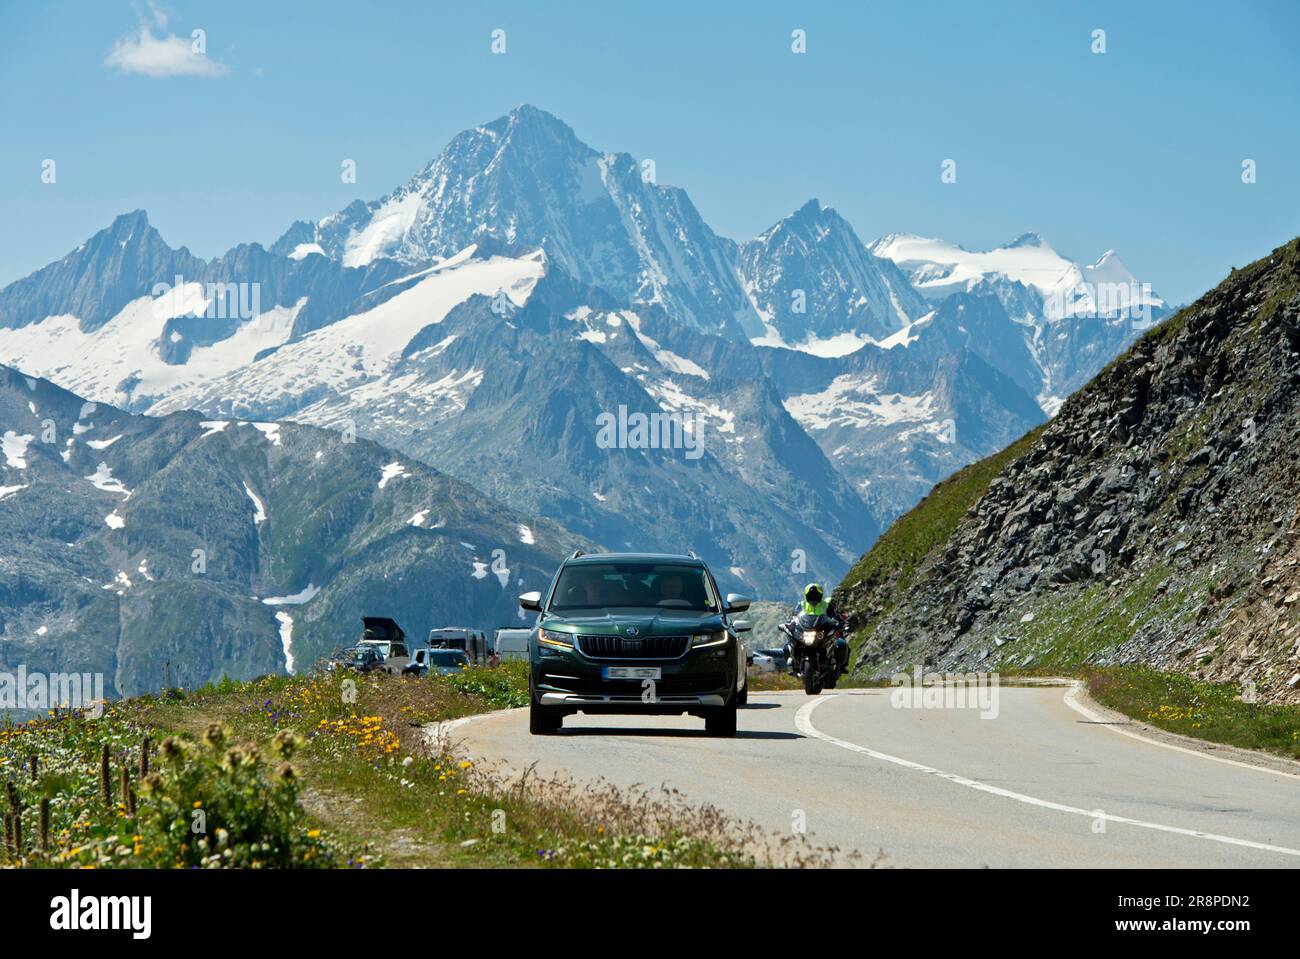 Routes alpines en Suisse, ascension vers le col de Furka, le sommet de Finsteraarhorn derrière, route du col de Furka près de Gletsch, Obergoms, Valais, Suisse Banque D'Images